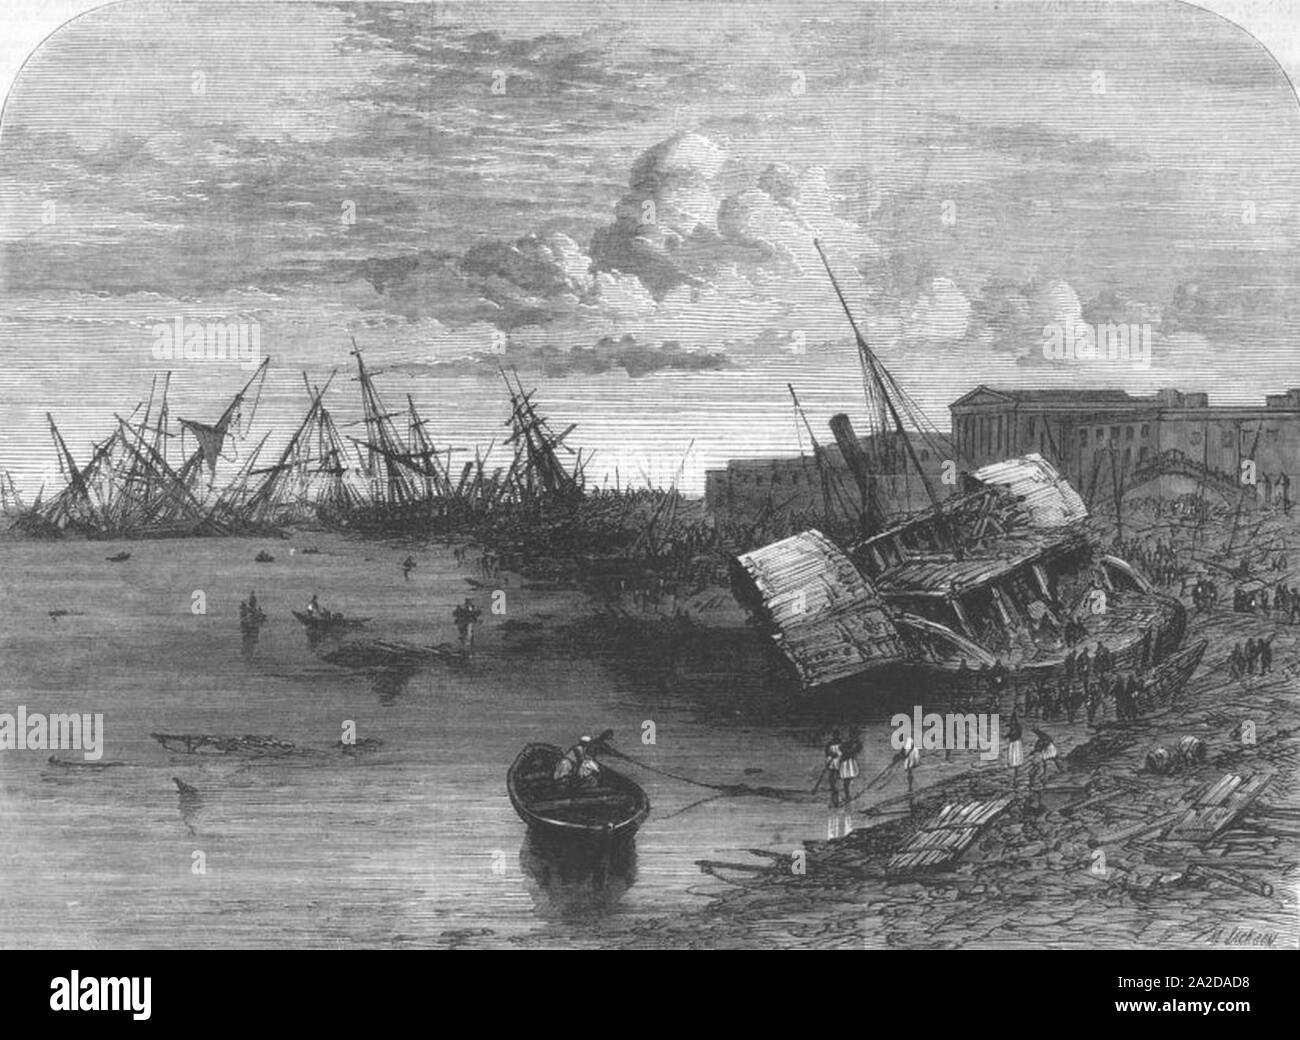 Auswirkungen des Zyklons in Kalkutta aus der Illustrated London News, 1864 eine dritte Ansicht. Stockfoto